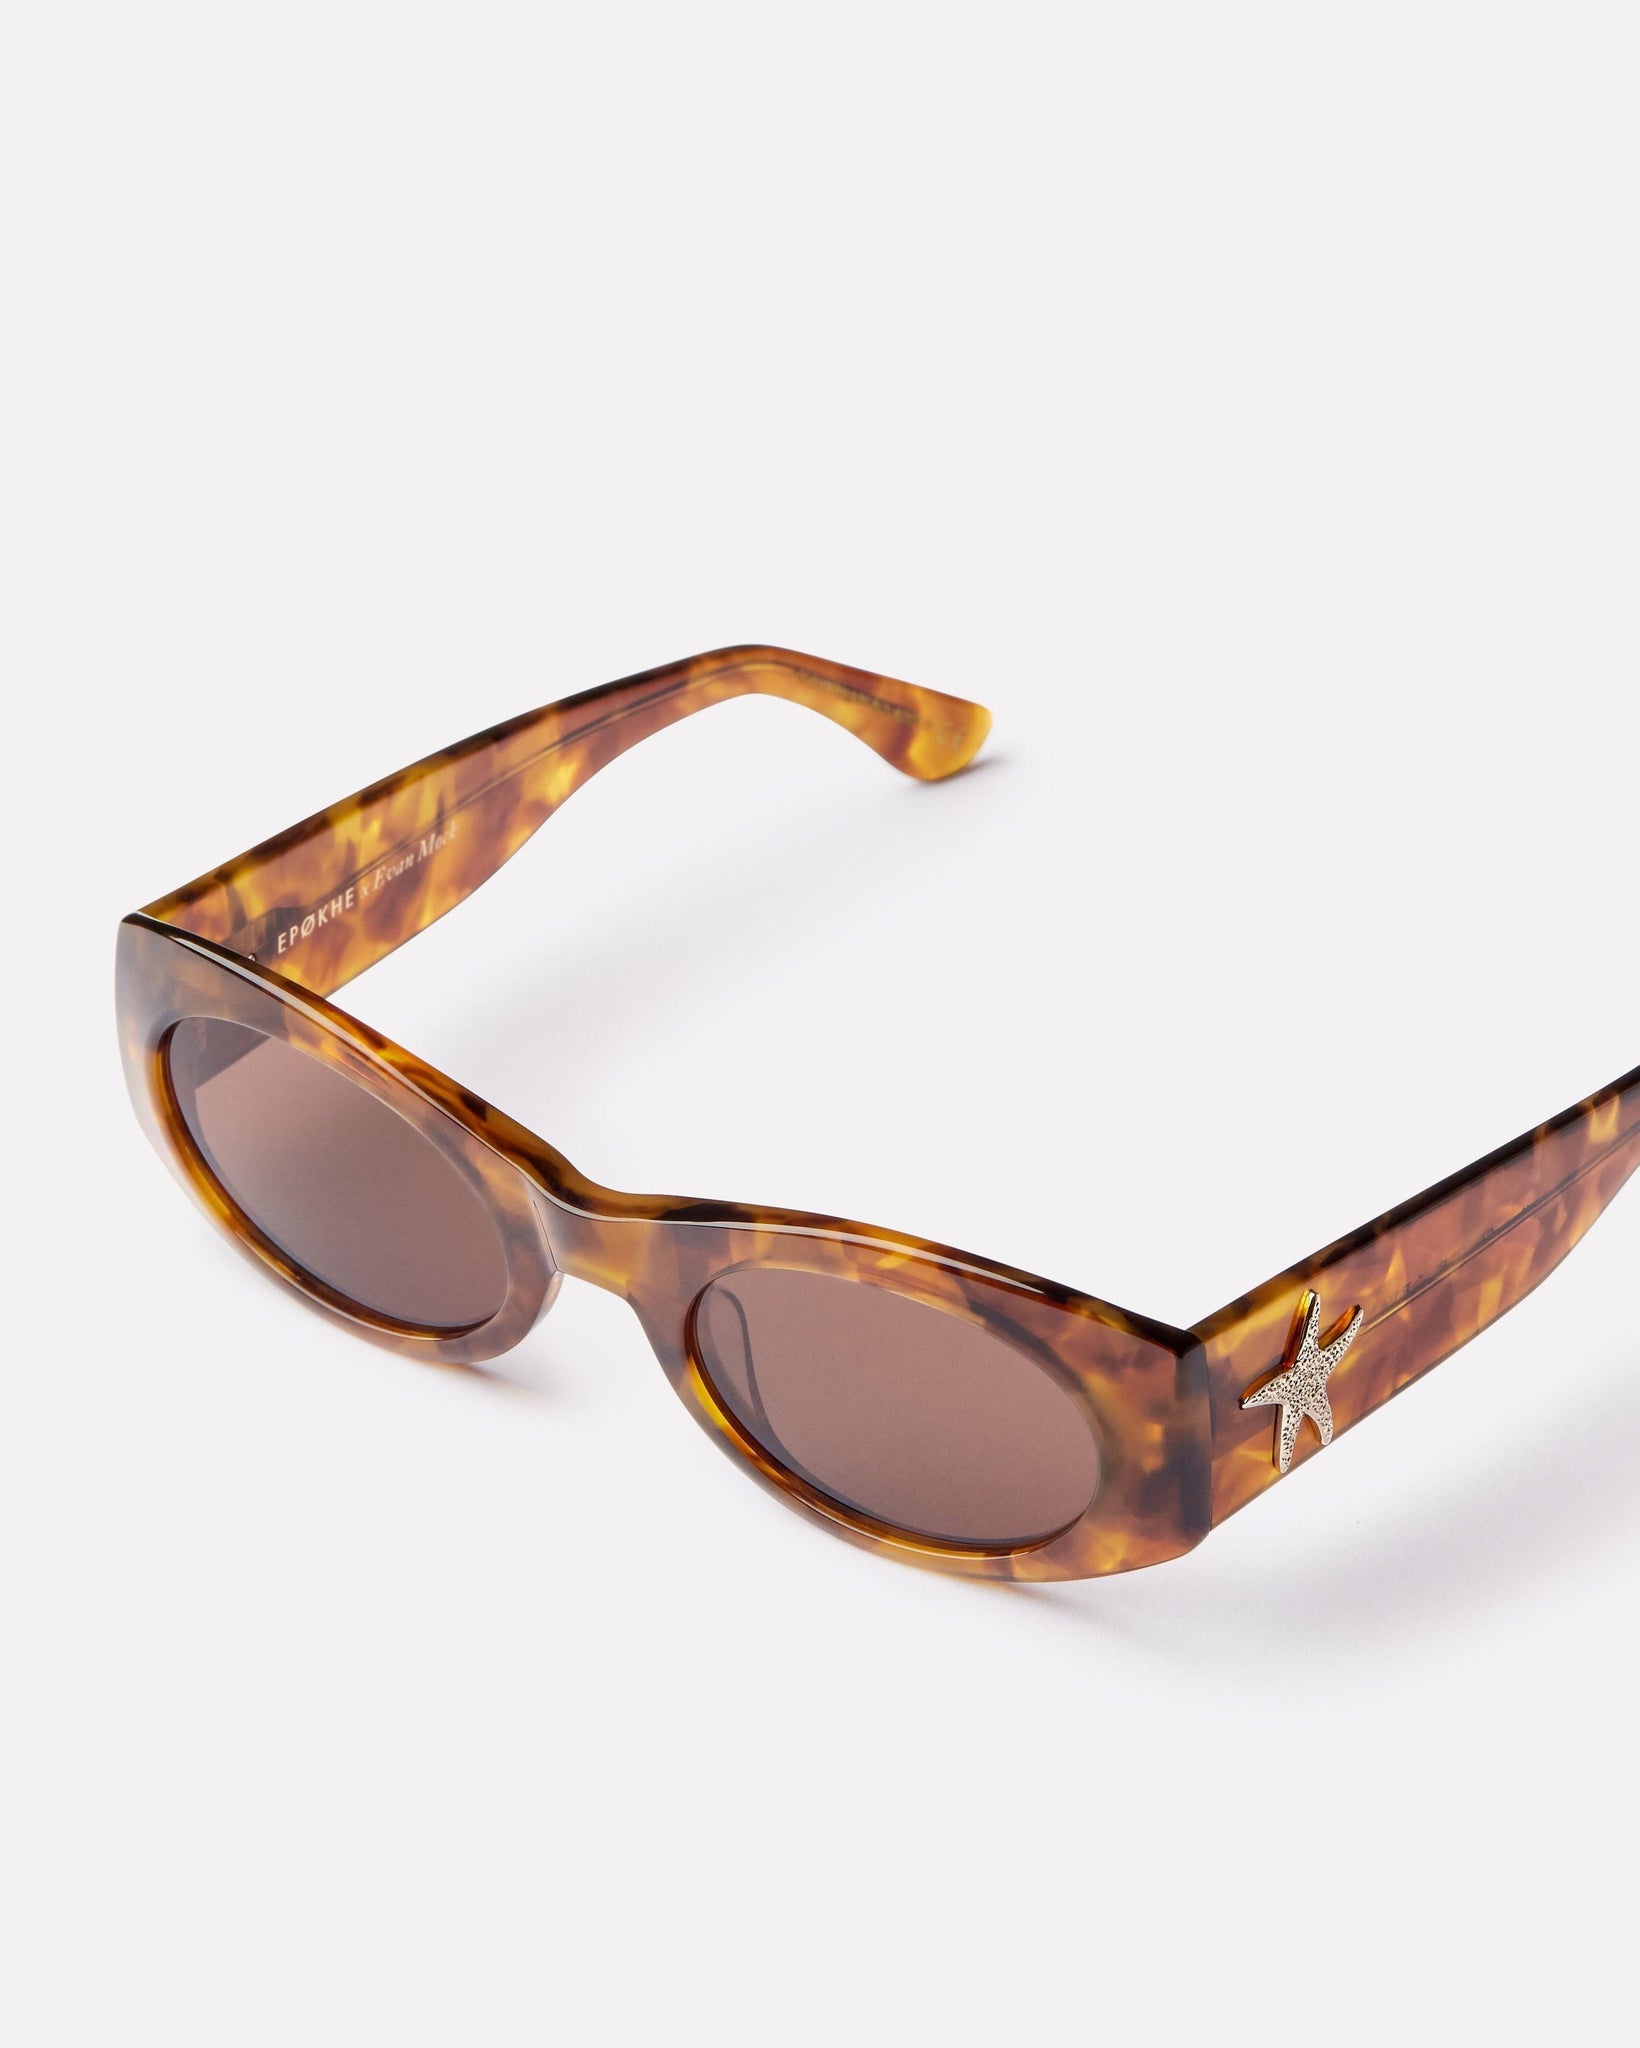 Suede - Tortoise Polished / Bronze - Sunglasses - EPOKHE EYEWEAR